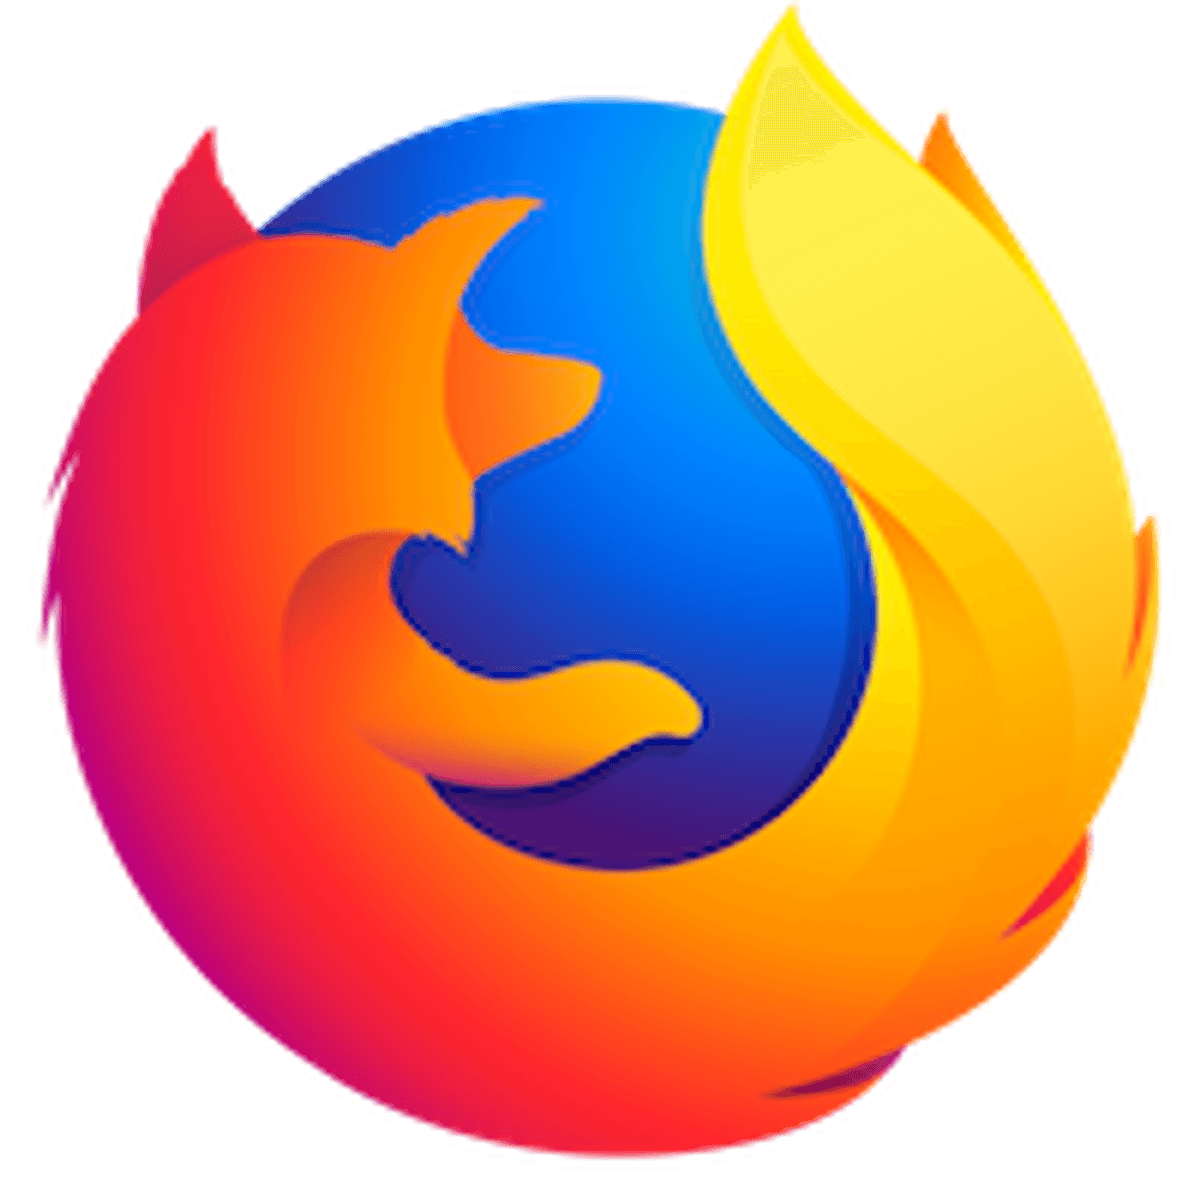 Webbrowser Firefox laadde website niet correct door technische probleem image